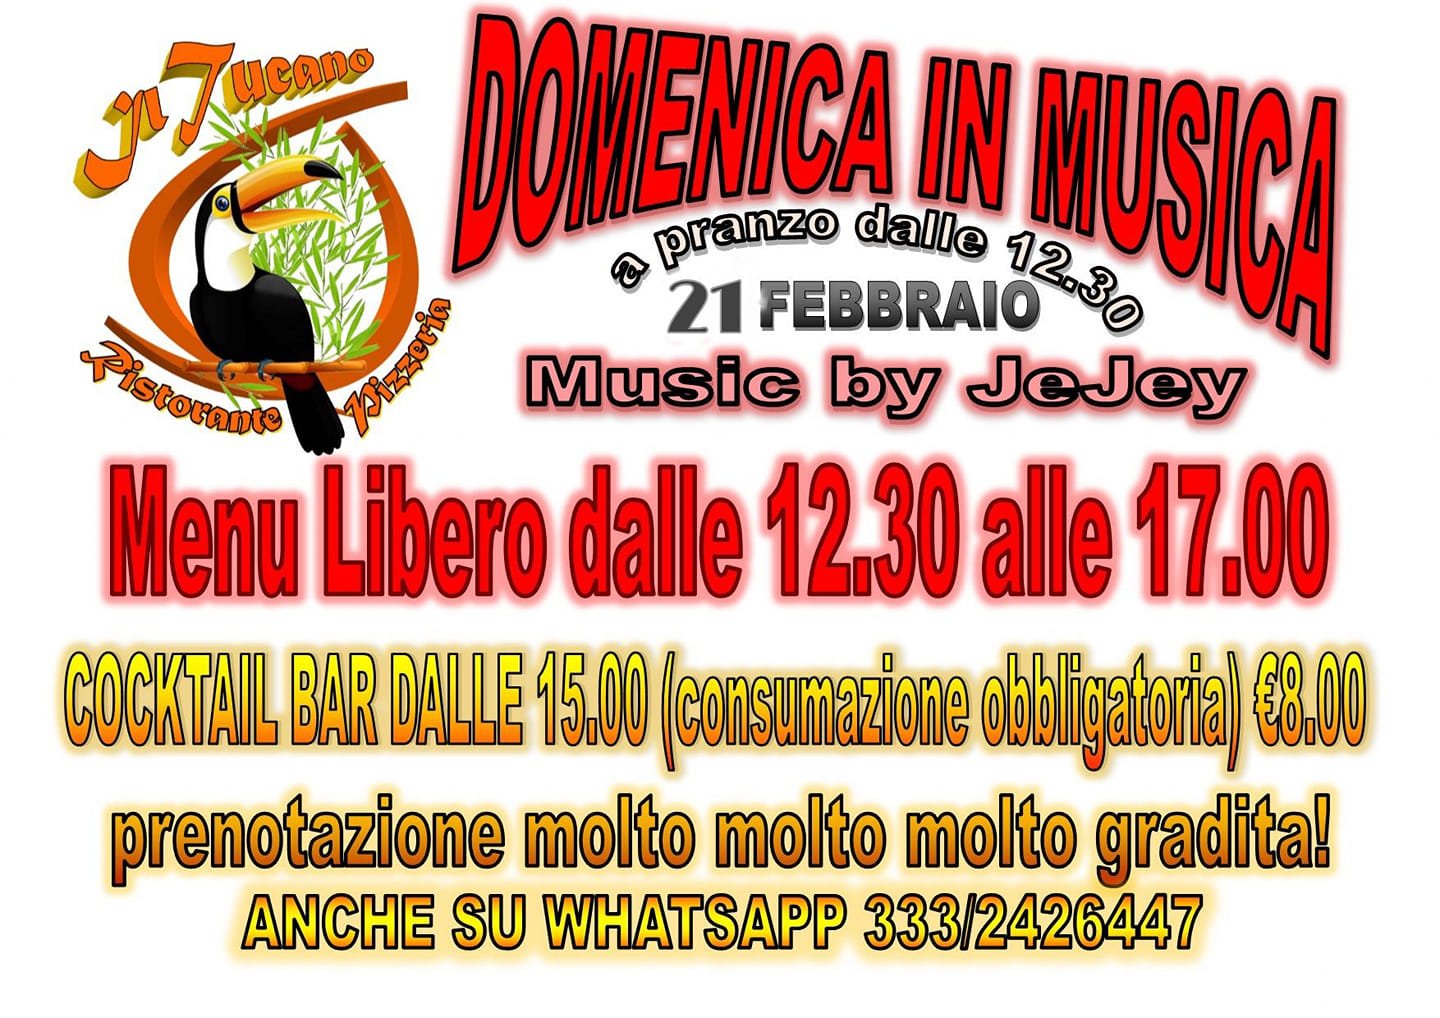 Ristorante Tucano Senigallia, Domenica in musica